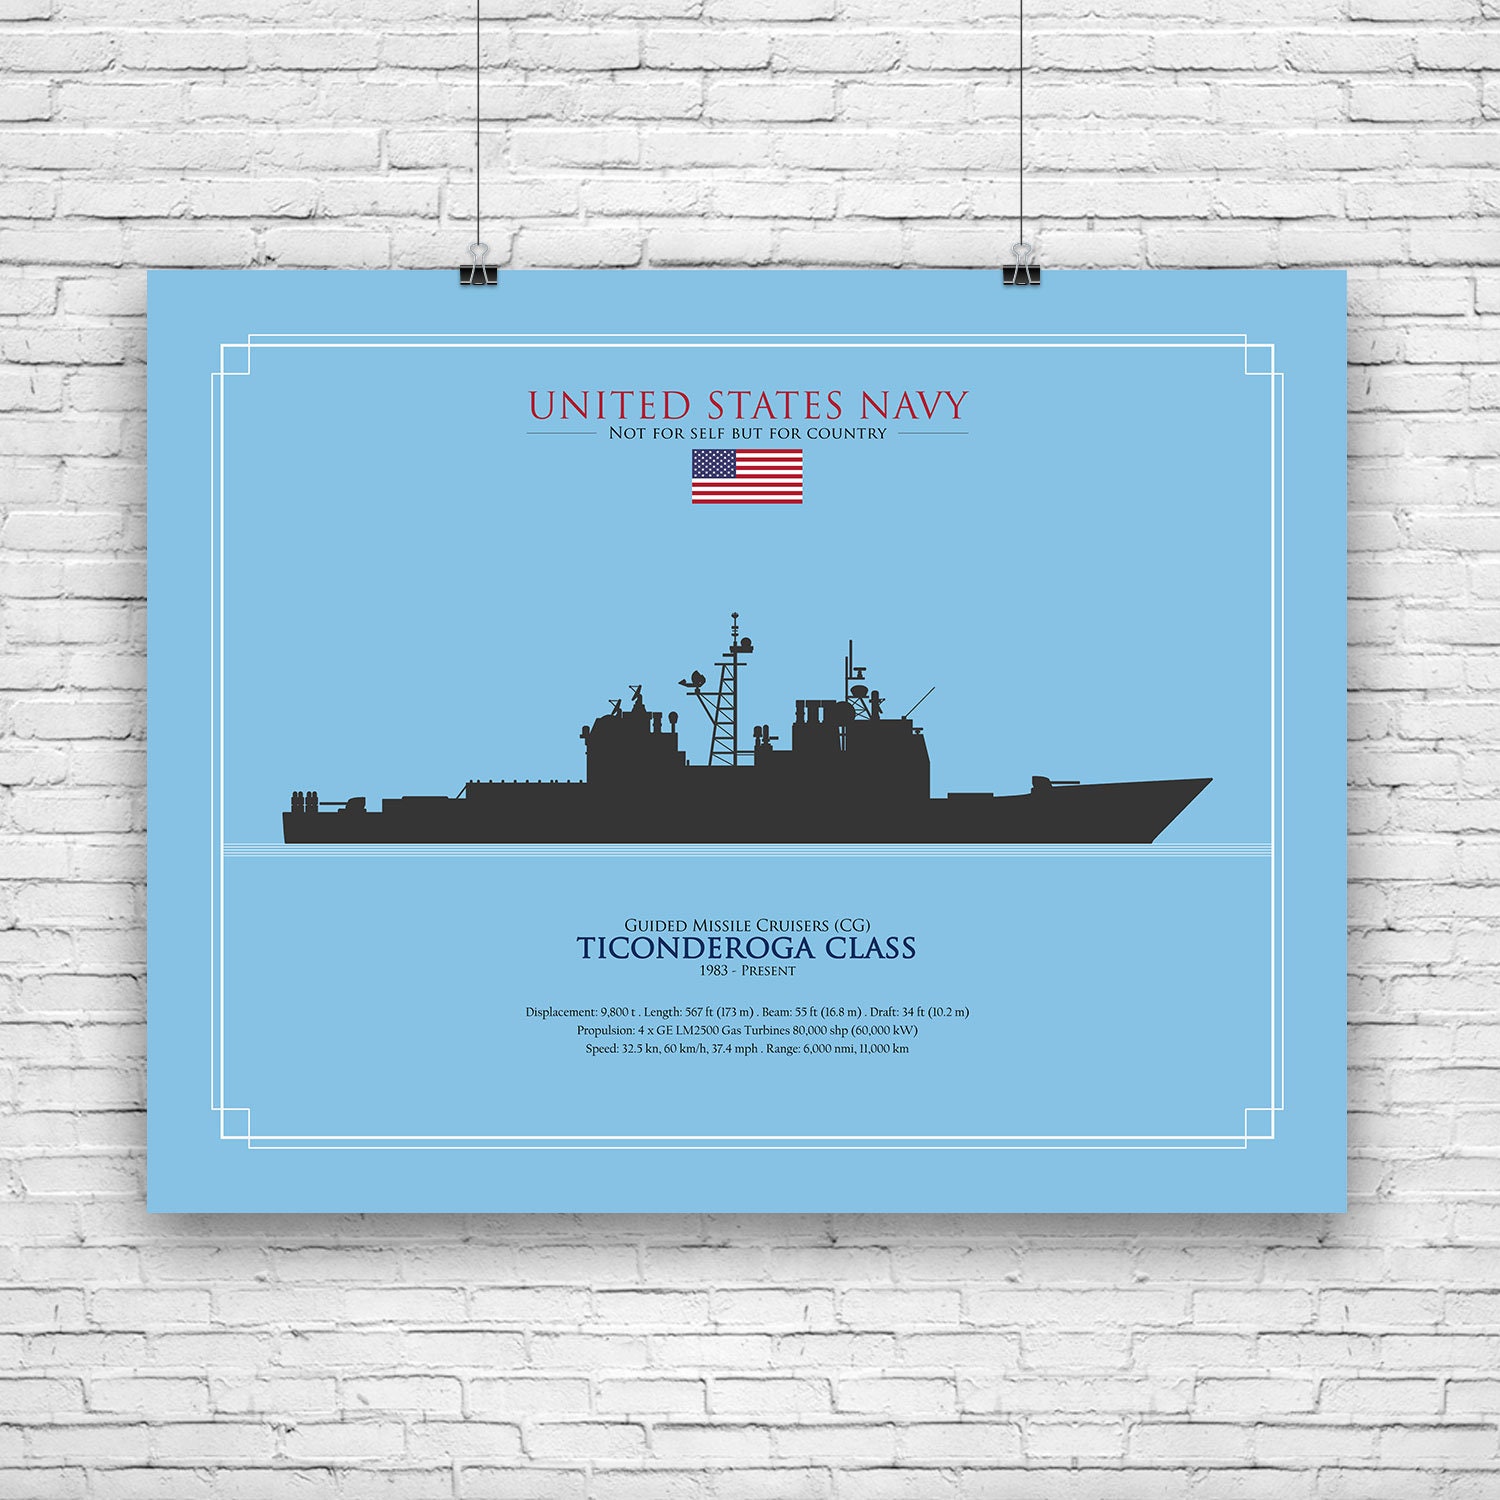 Ticonderoga Class Aegis Guided-Missile Cruisers, USA